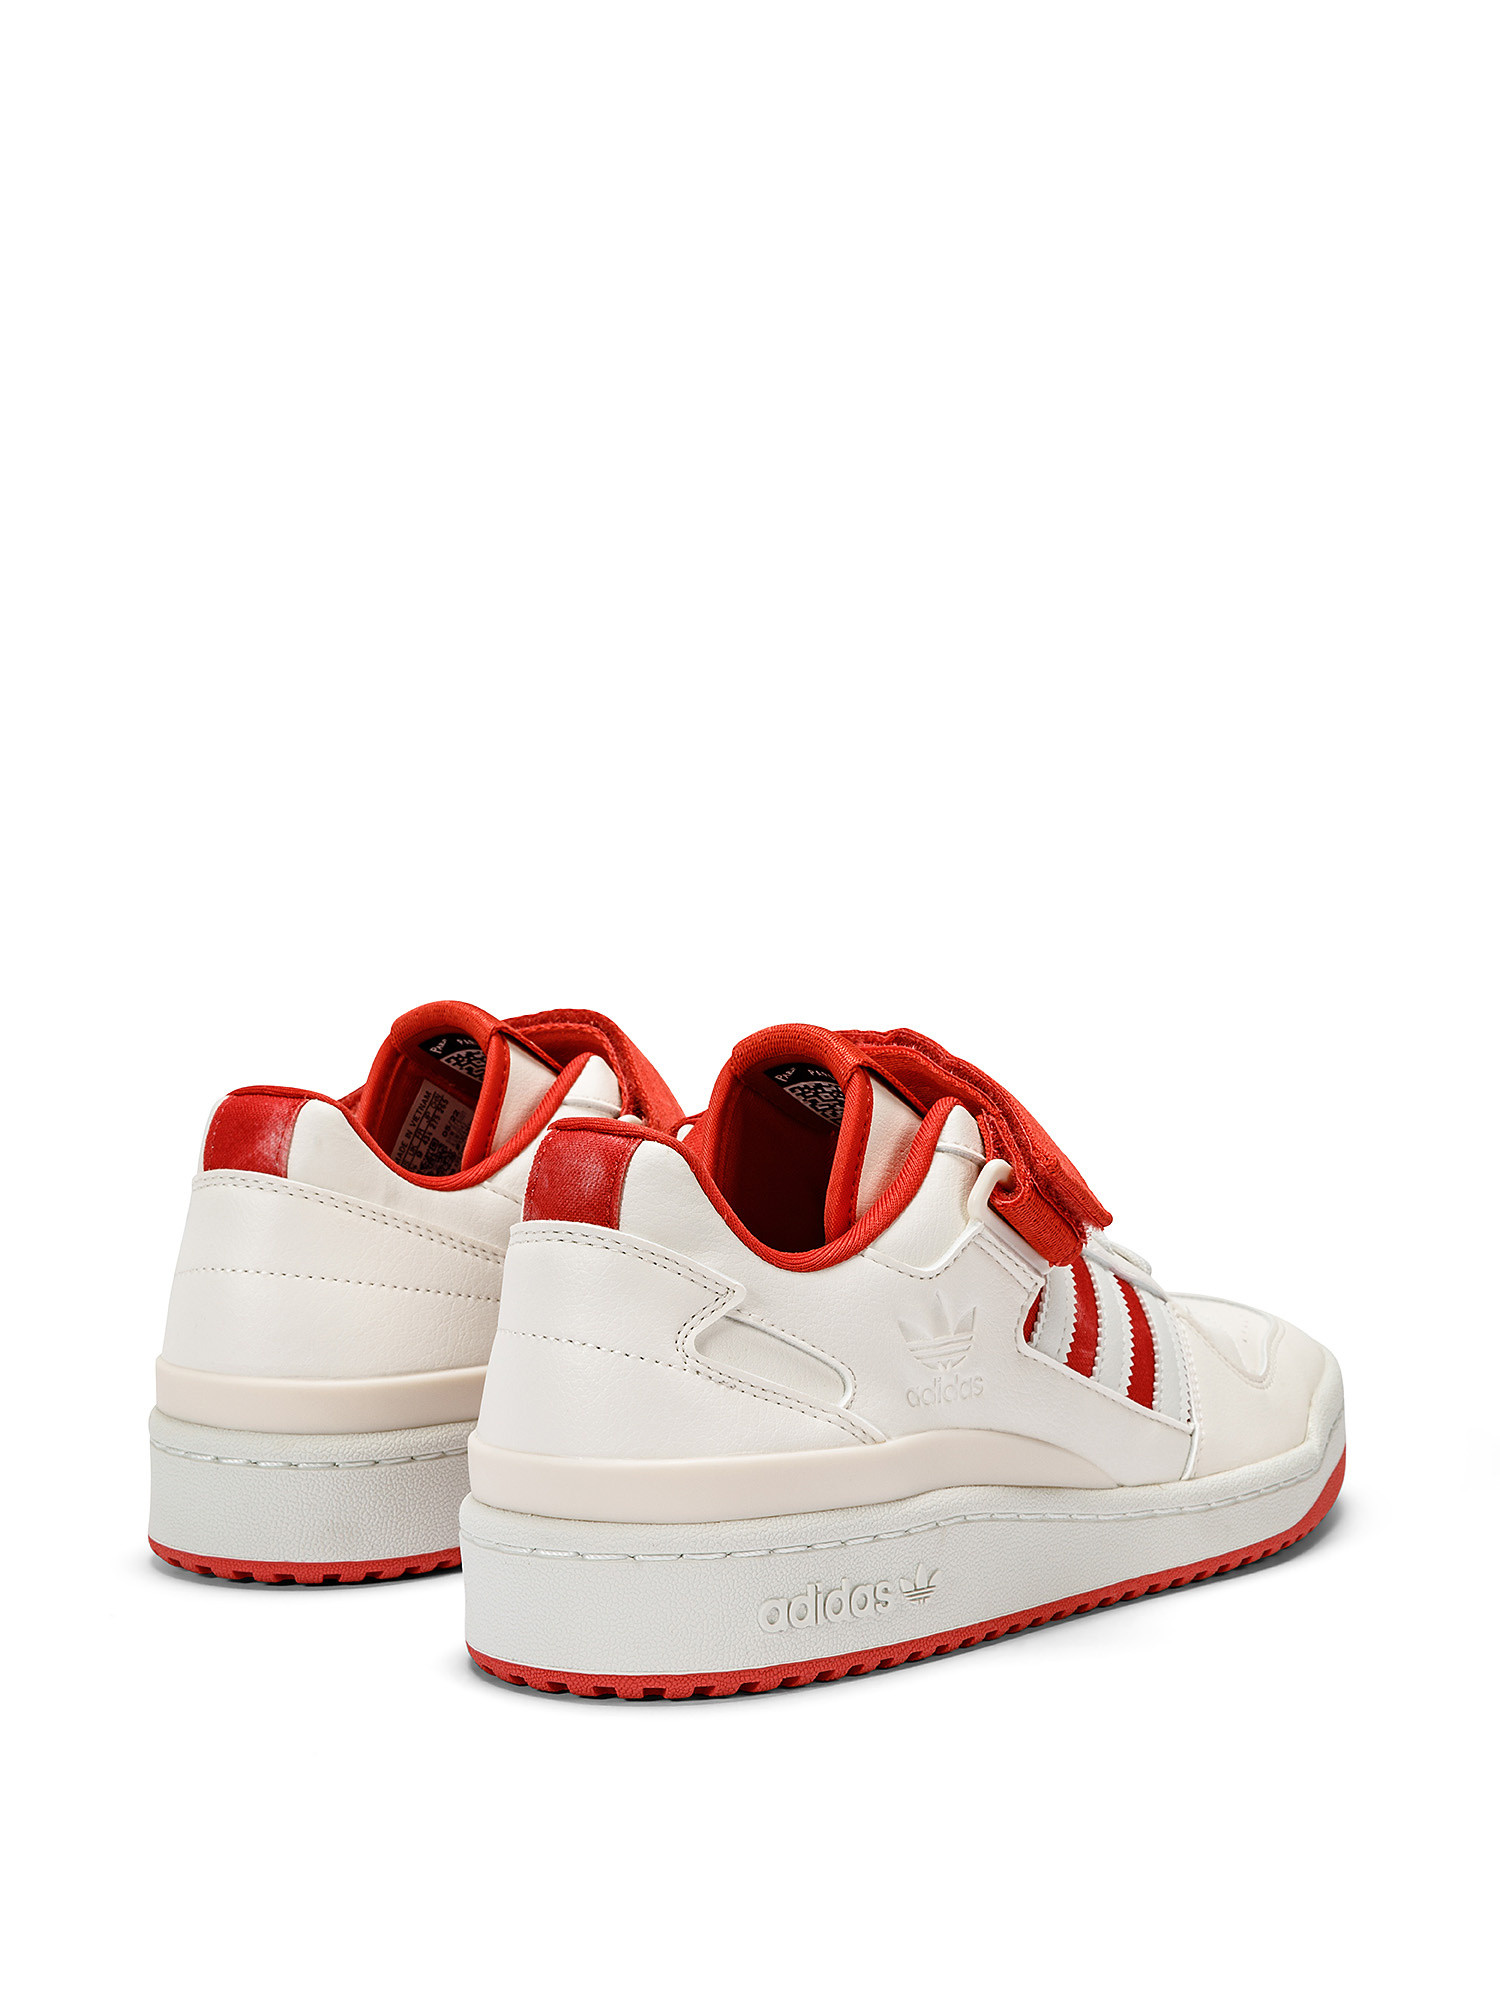 Adidas - Scarpe Forum Low, Bianco, large image number 2